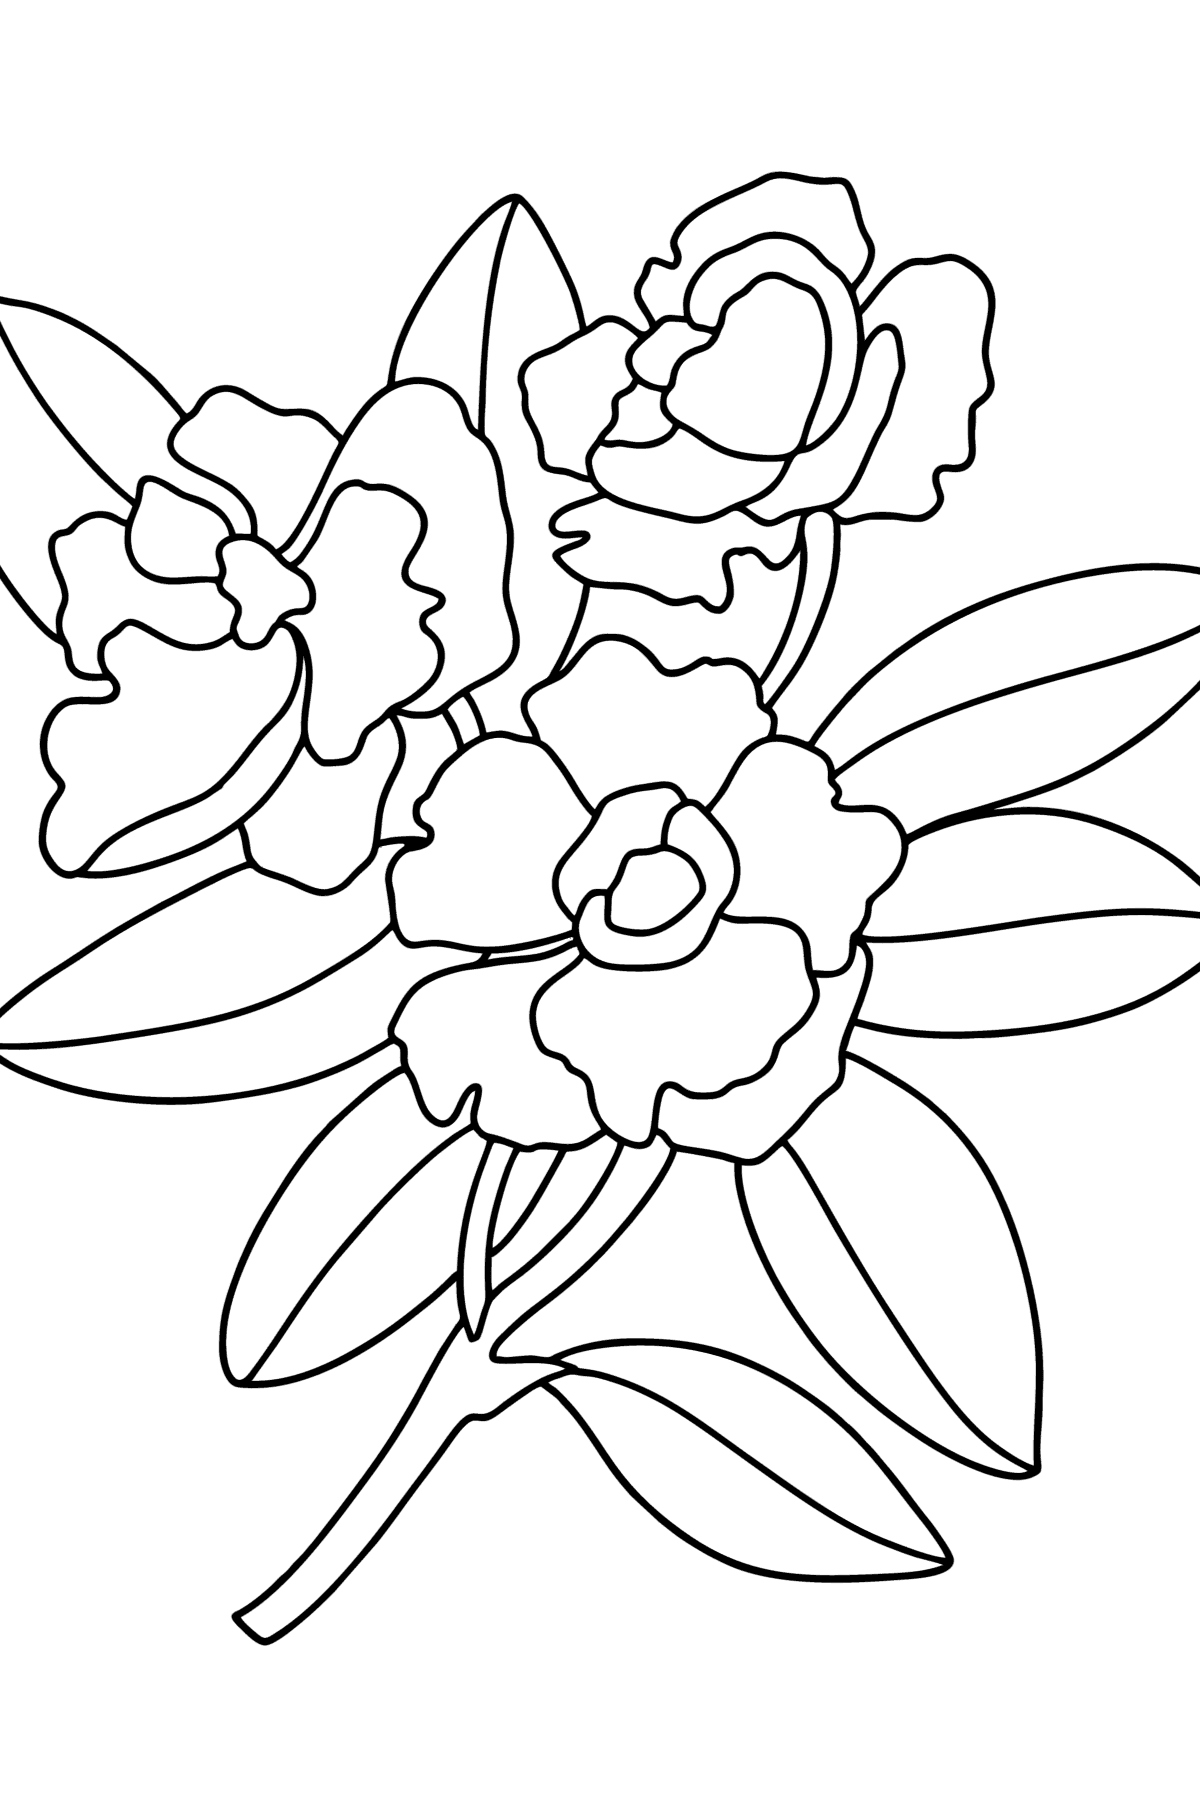 Tegning til fargelegging Gardenia - Tegninger til fargelegging for barn